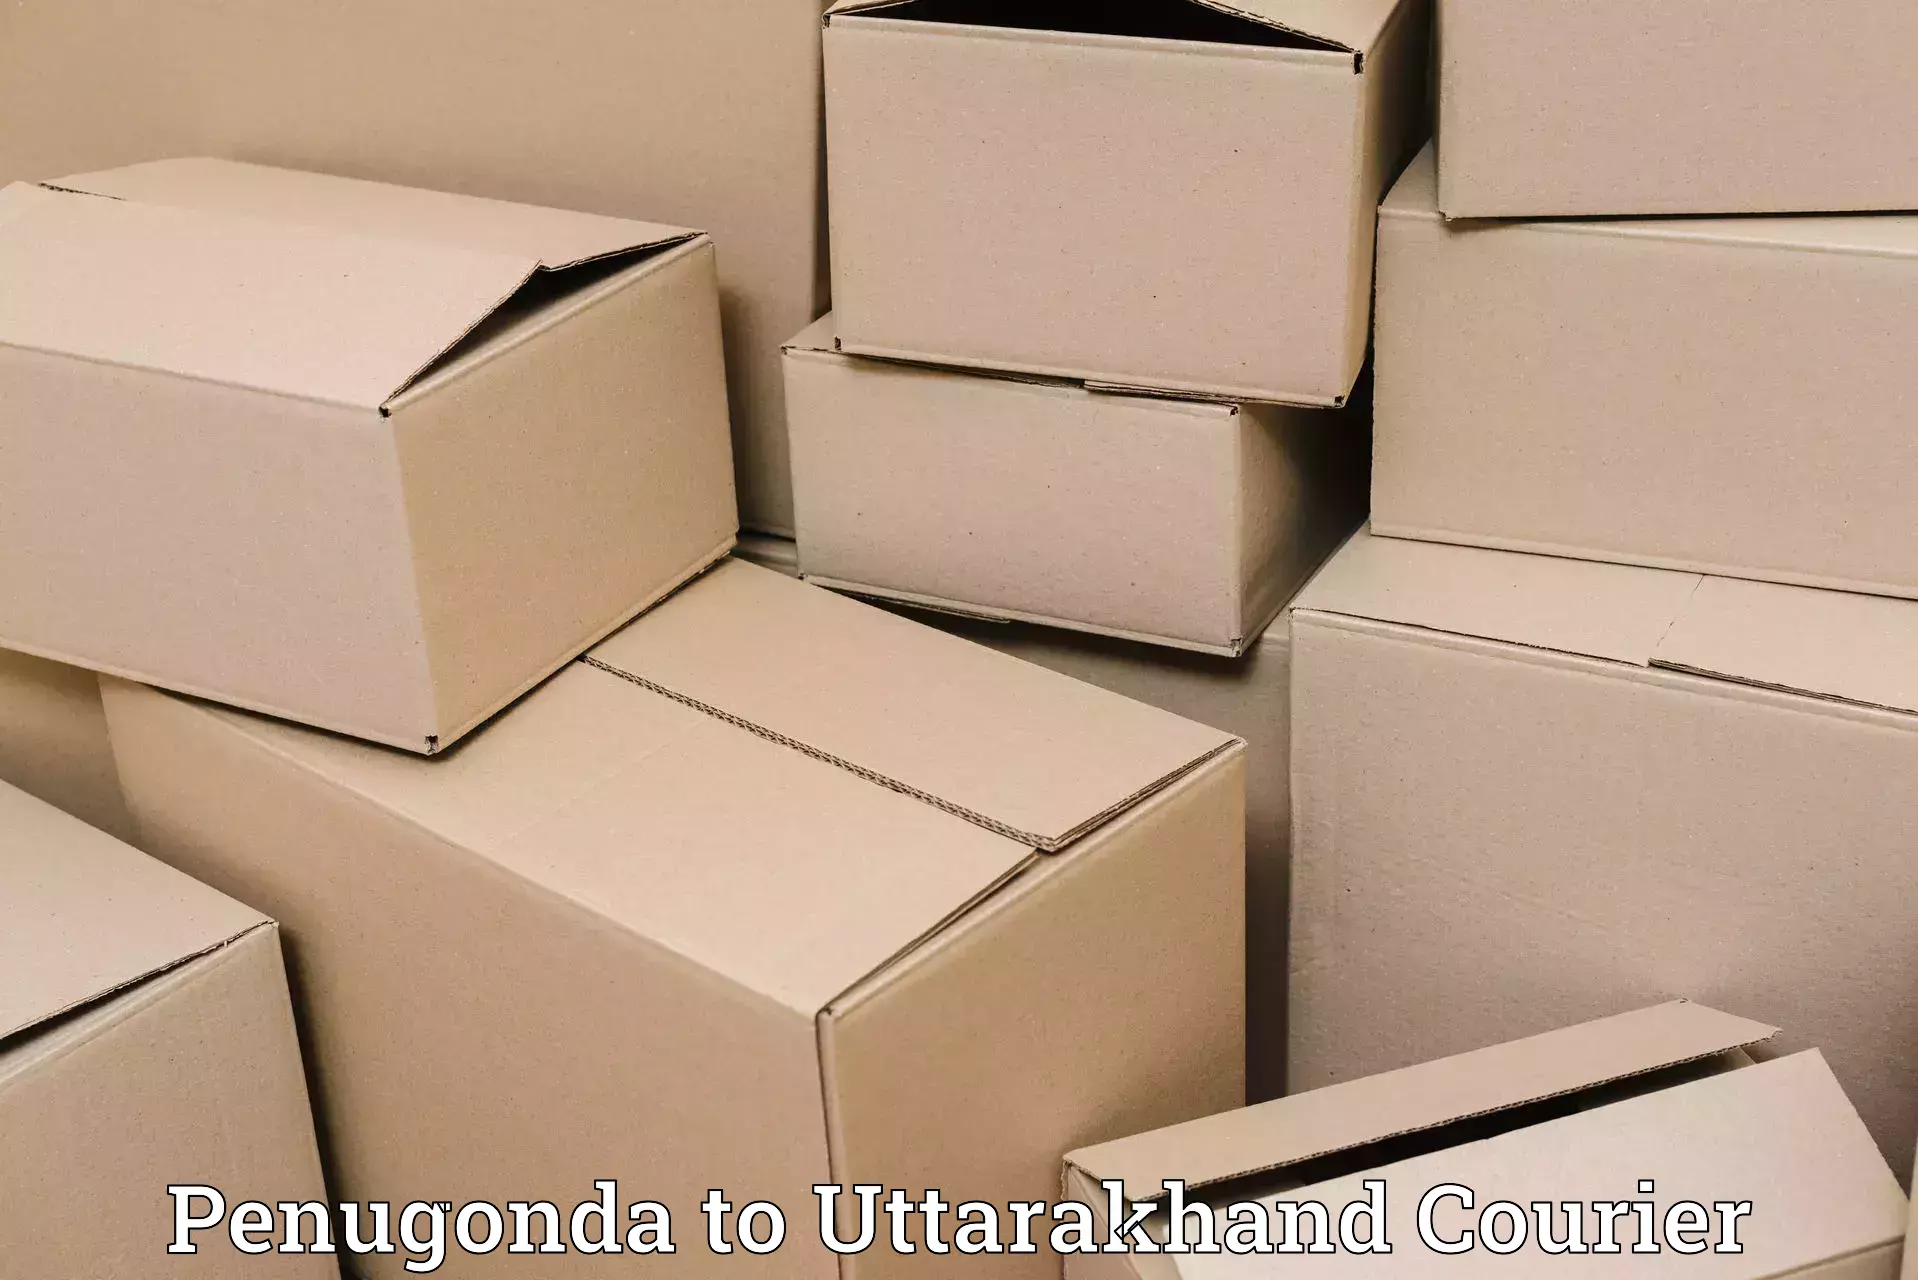 Efficient parcel service Penugonda to IIT Roorkee